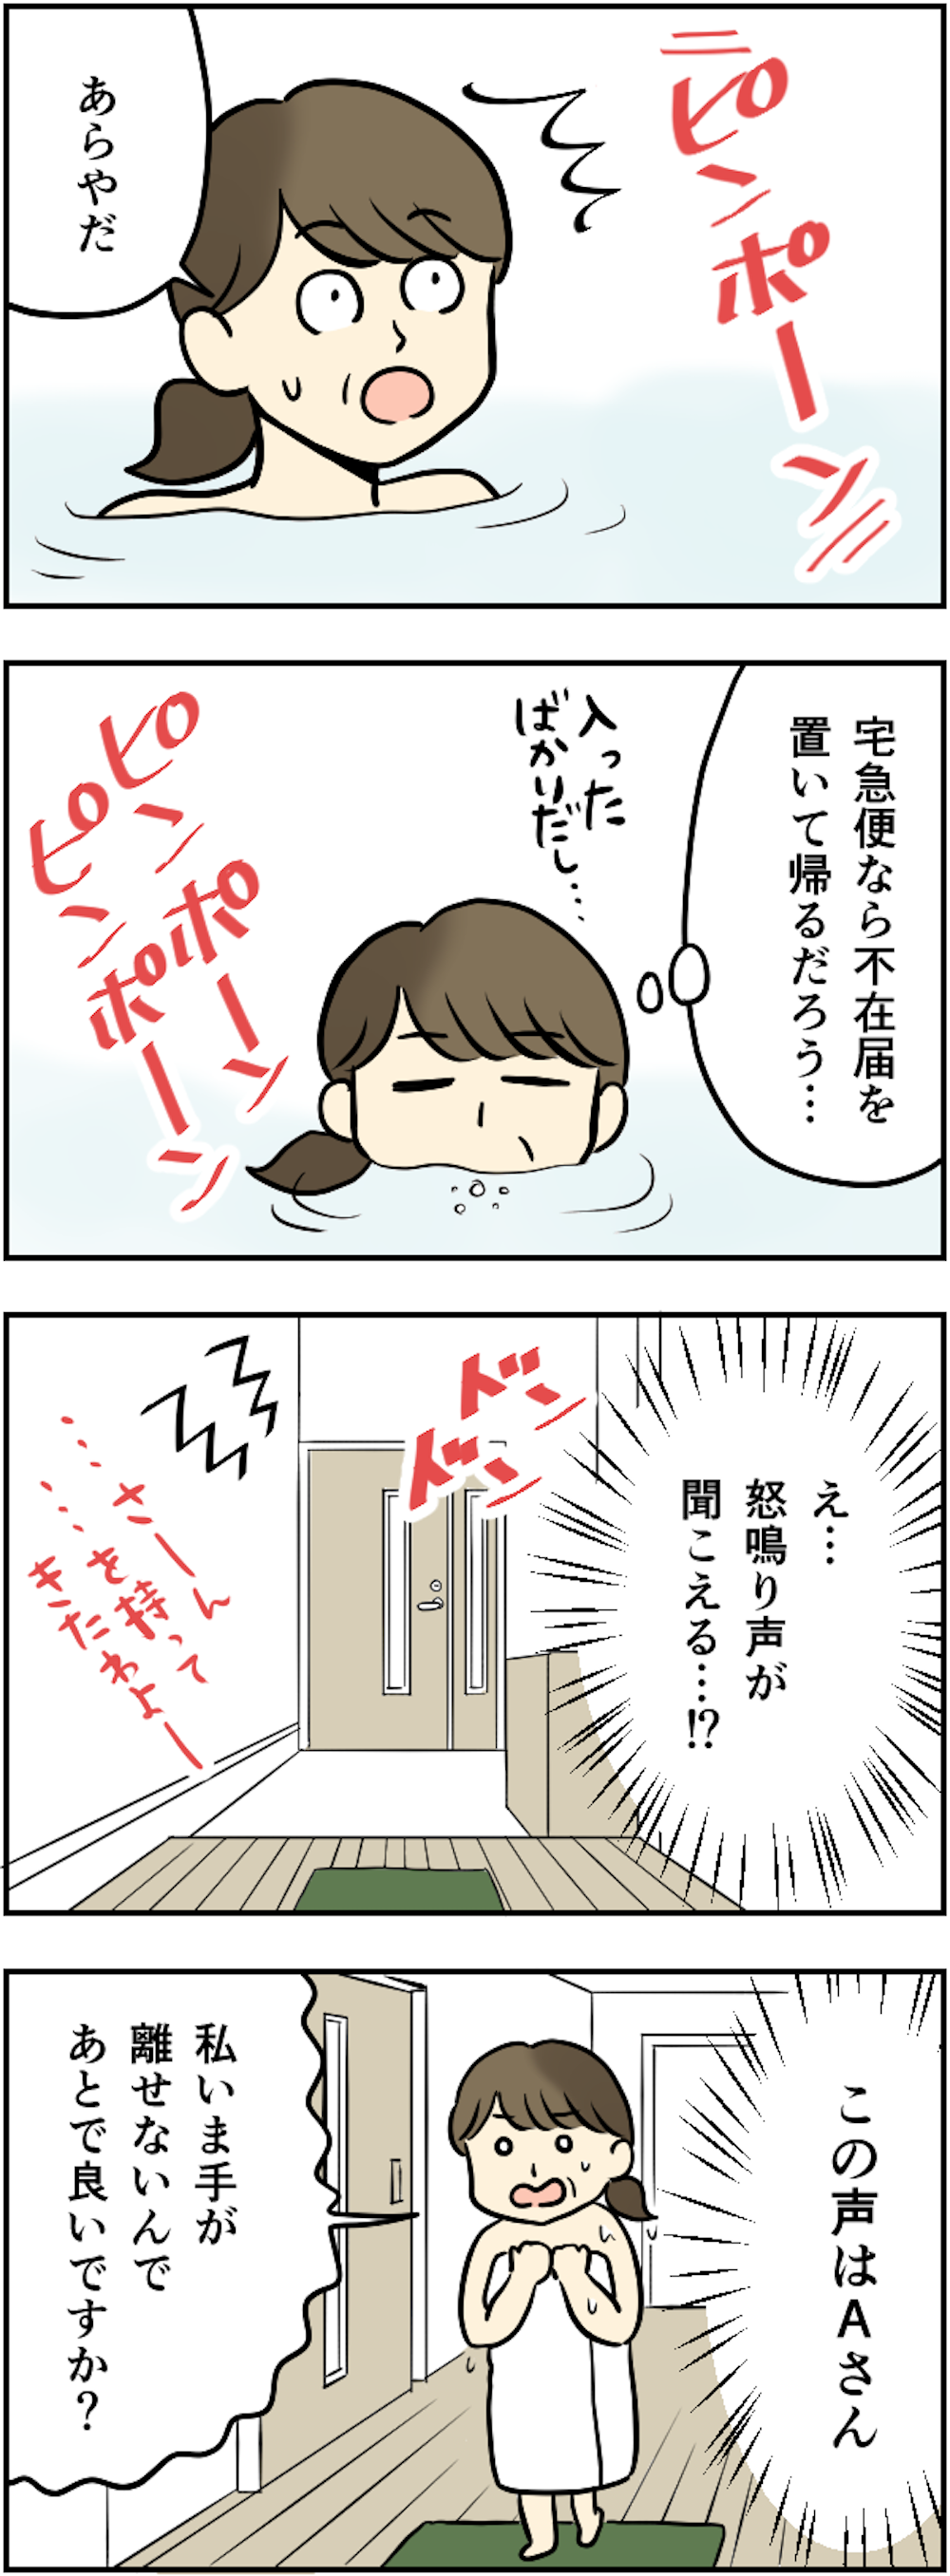 【漫画】「窓を開けろ！」って...私、入浴中ですが!?　ご近所さん、風呂の窓の外で大声出さないで 115kansei_012.png